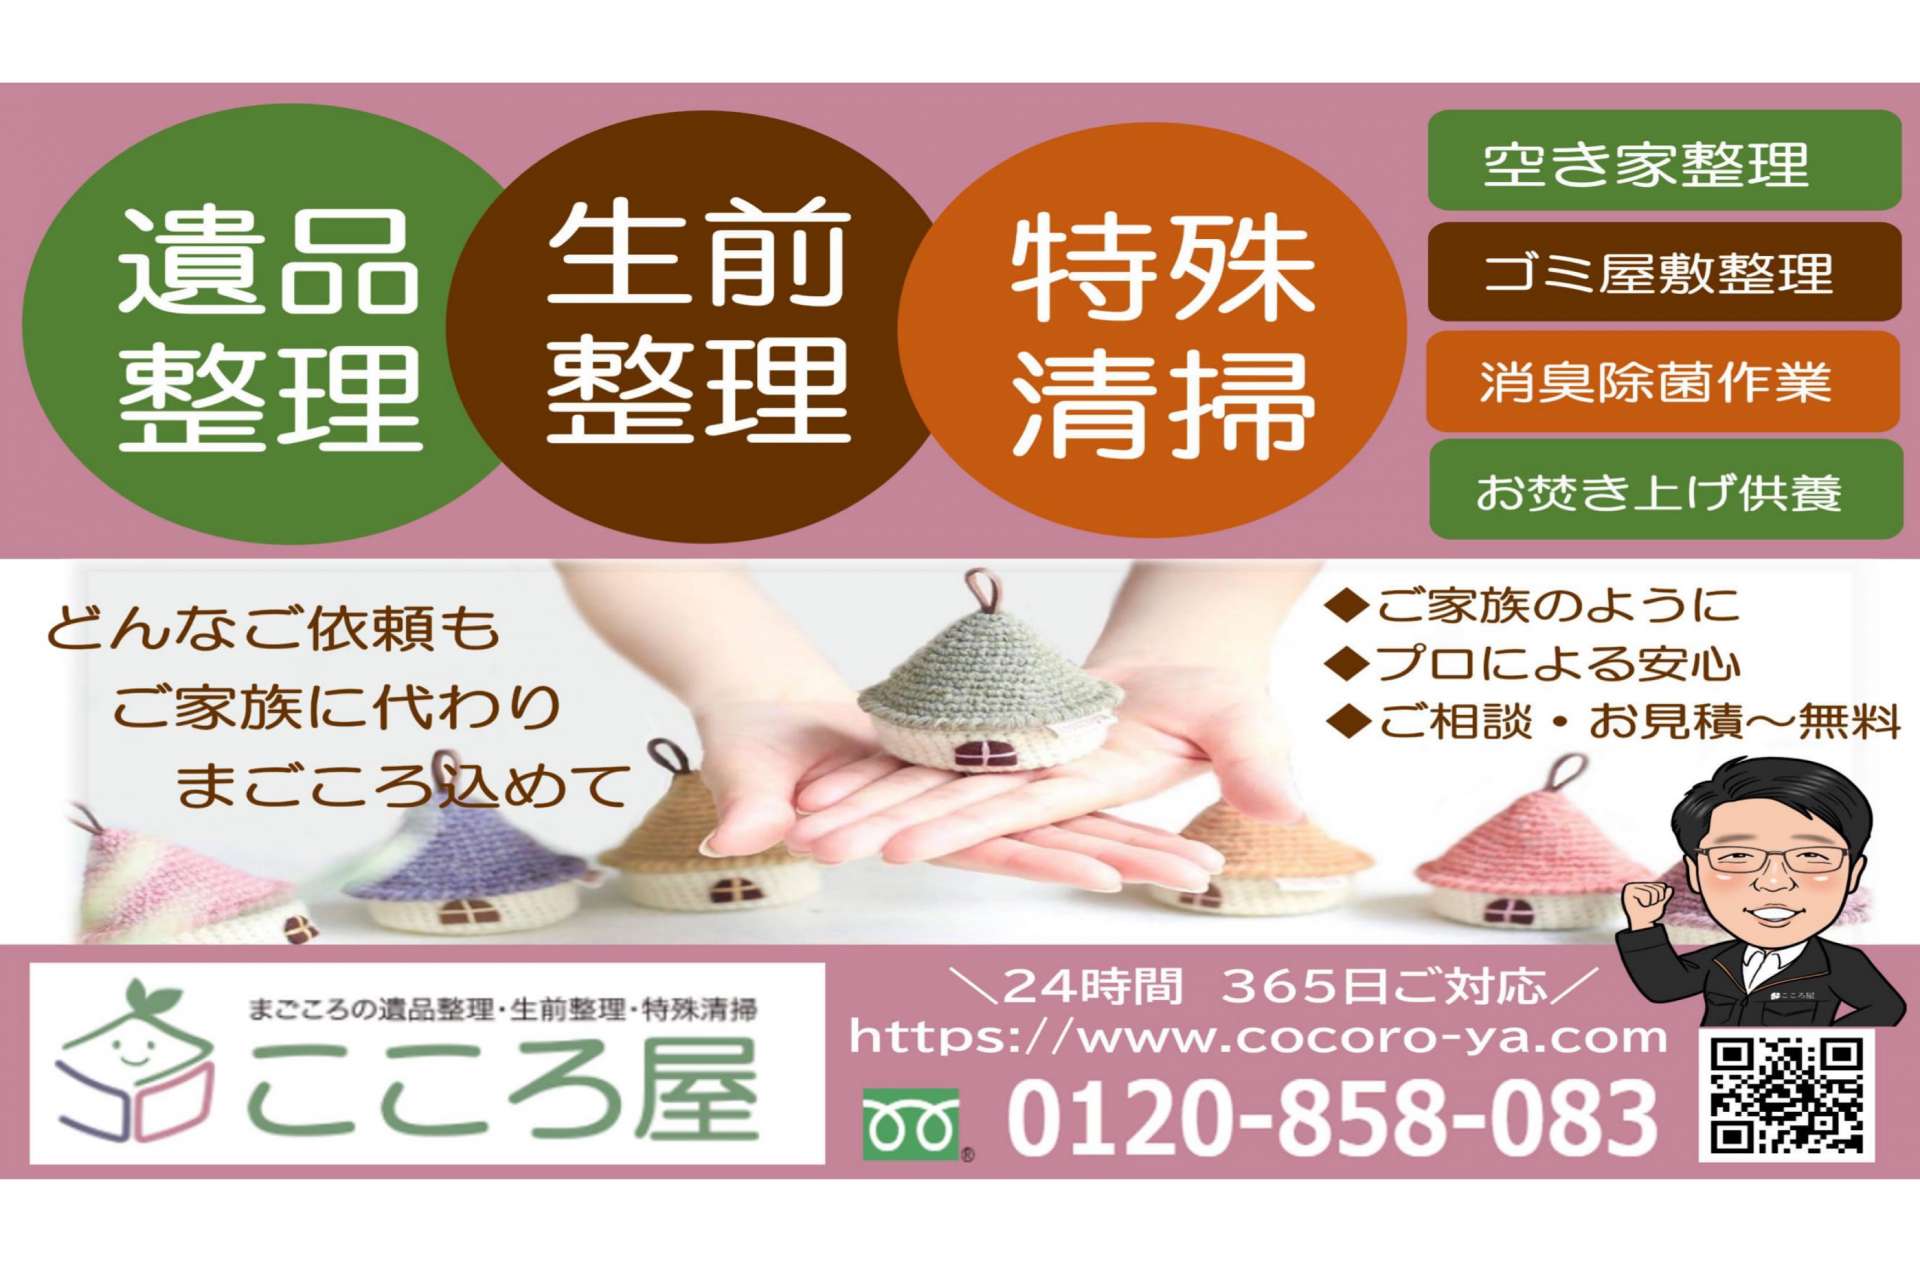 札幌市での空き家整理やご遺品整理不用品は【こころ屋】へお任せください。